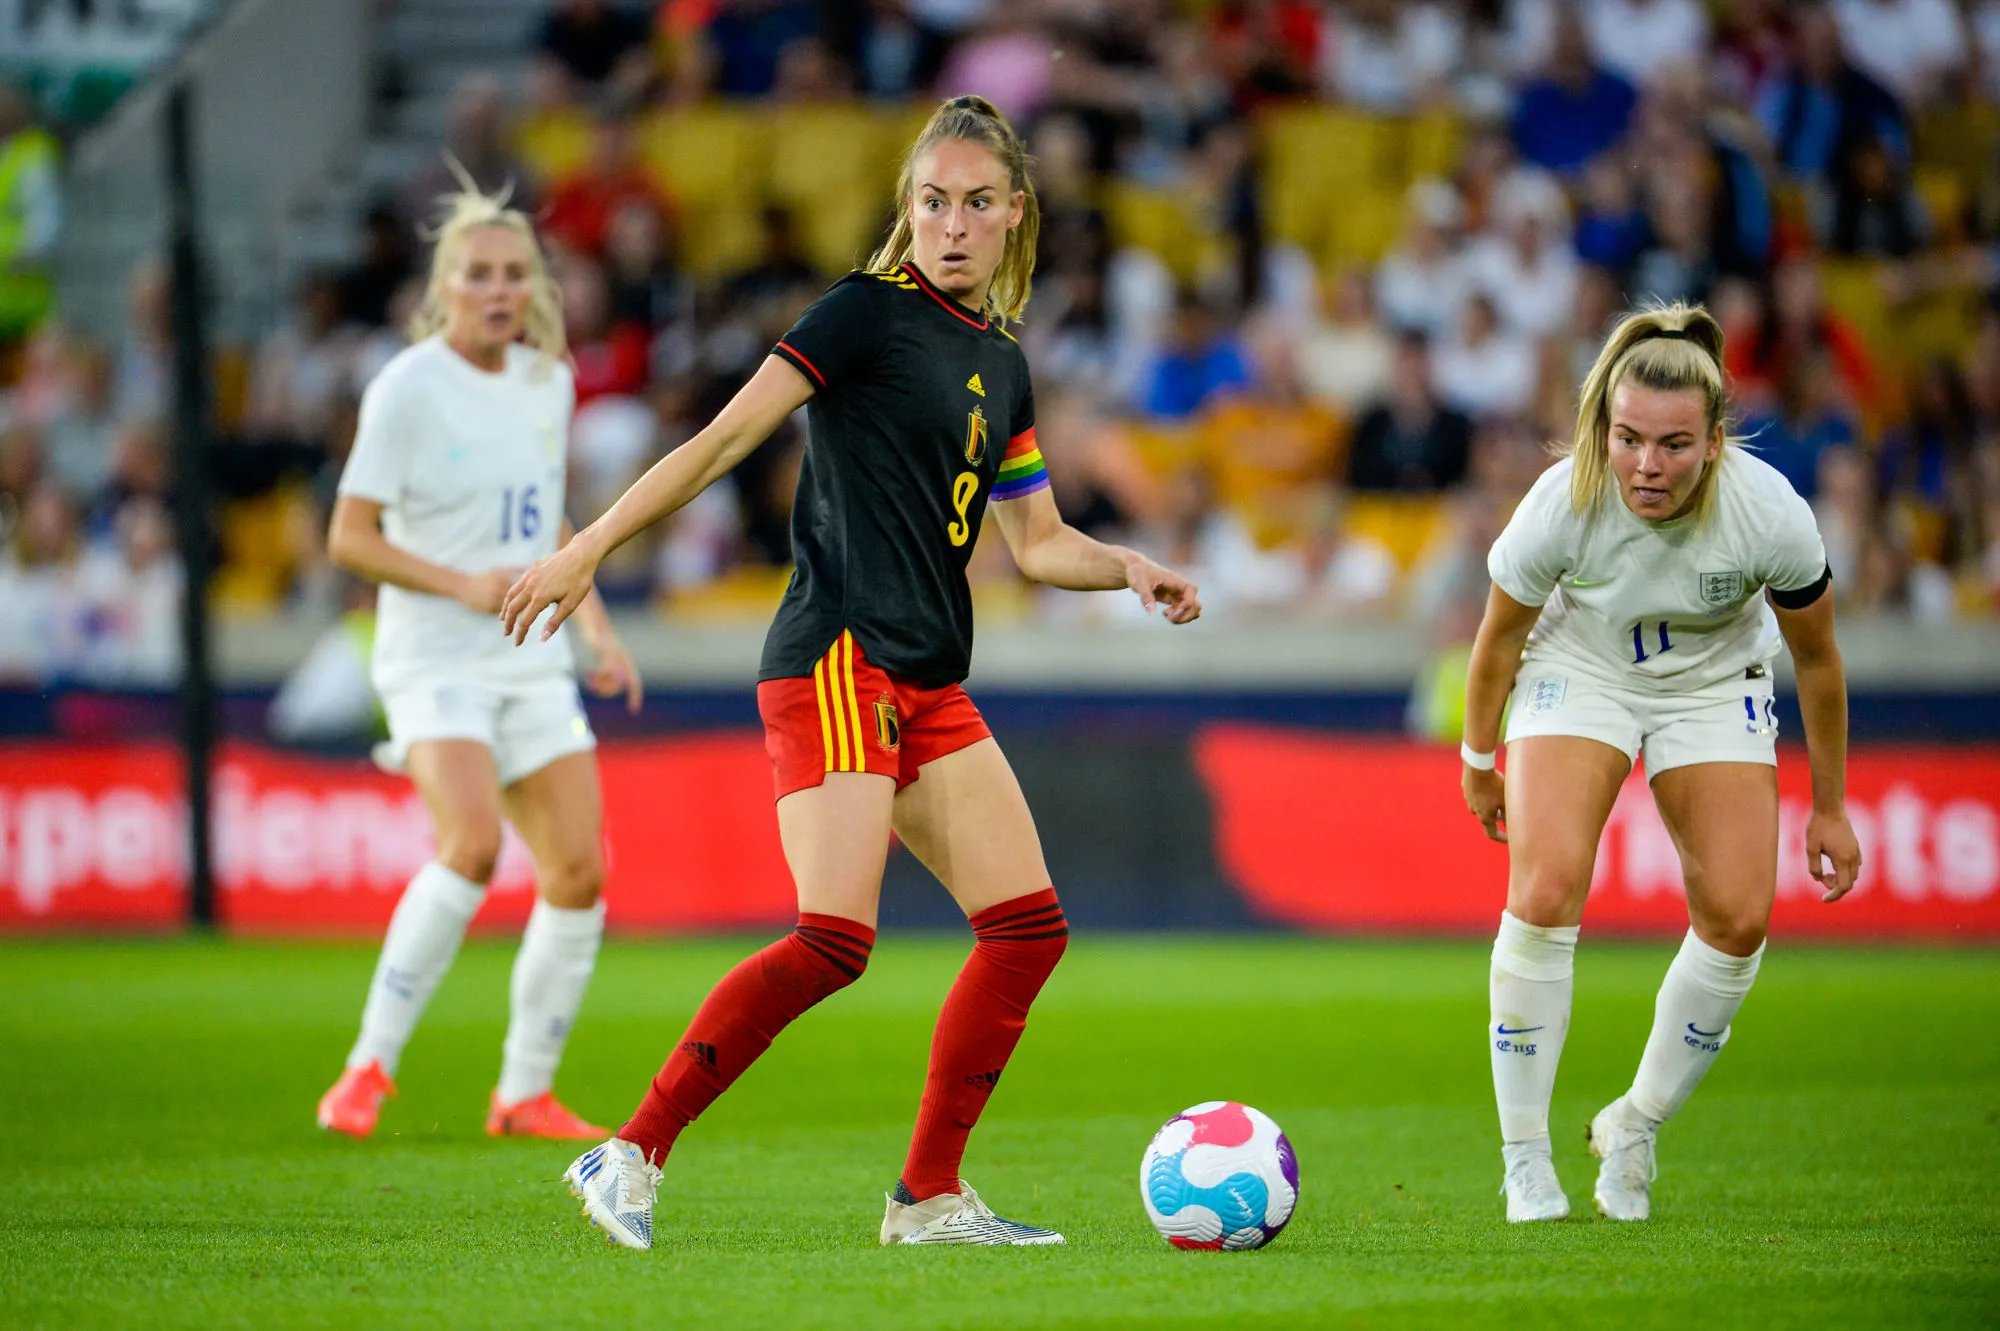 Pronostic Belgique Irlande du Nord : Analyse, cotes et prono du match amical féminin